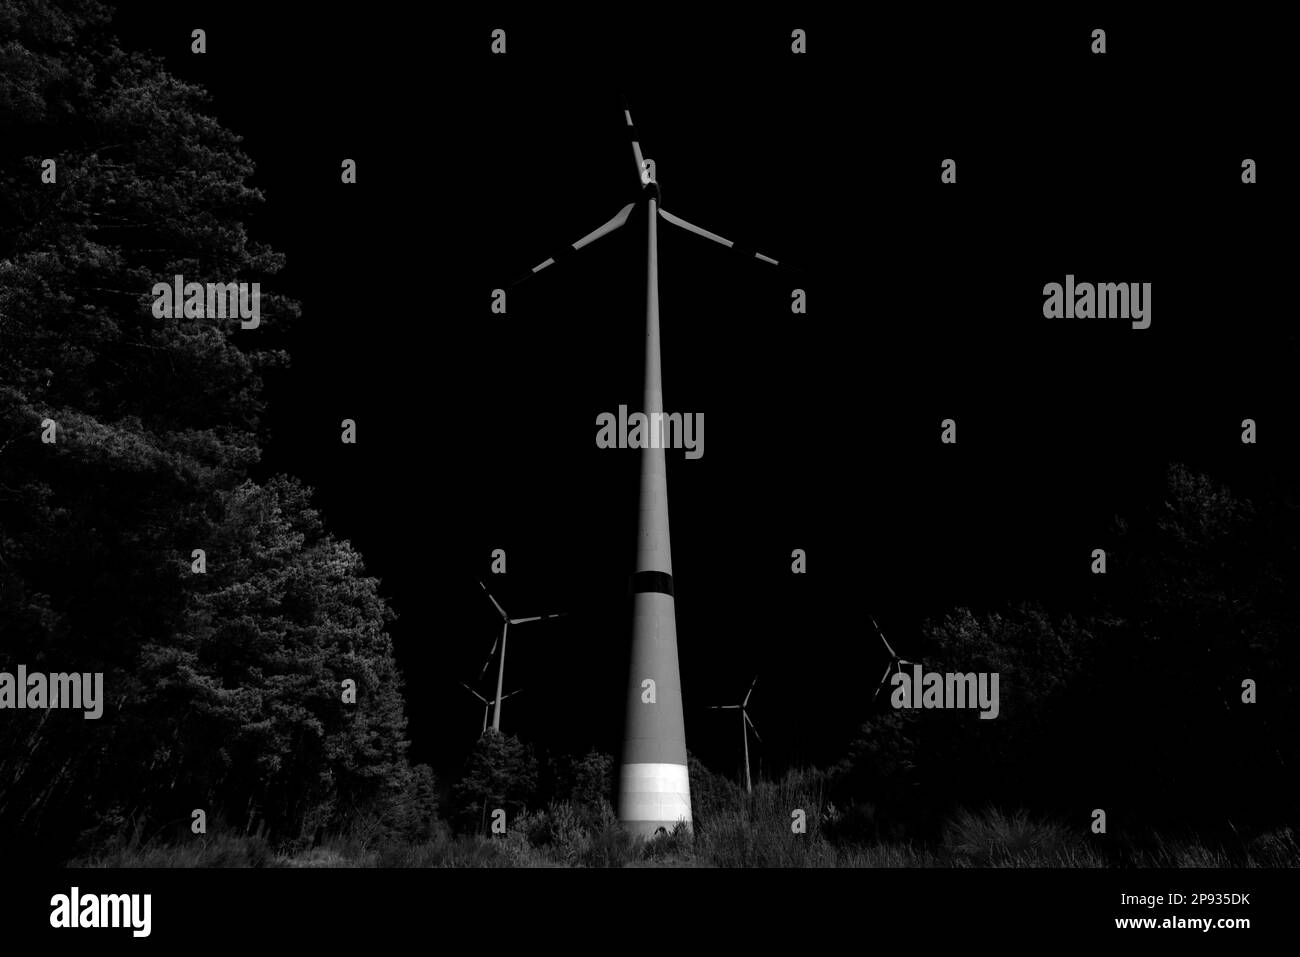 Windturbinen in einem Wald, schwarzer dunkler Himmel, Schwarzweiß-Fotografie Stockfoto